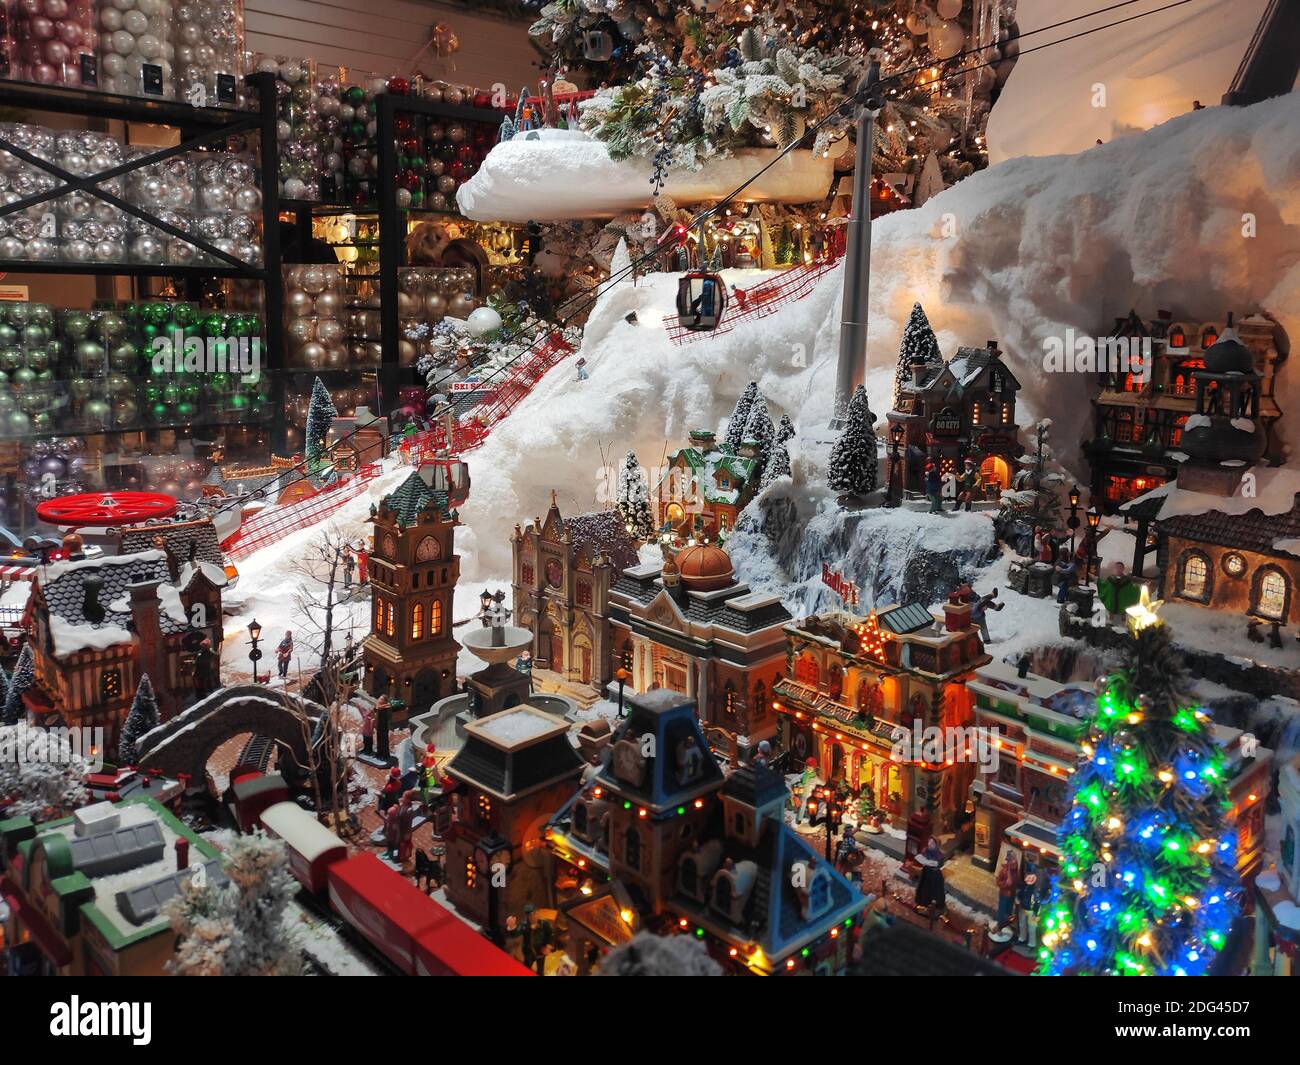 Village de Noël avec une station de téléphérique à l'intérieur d'un magasin Avec des cadeaux et des décorations de Noël Banque D'Images